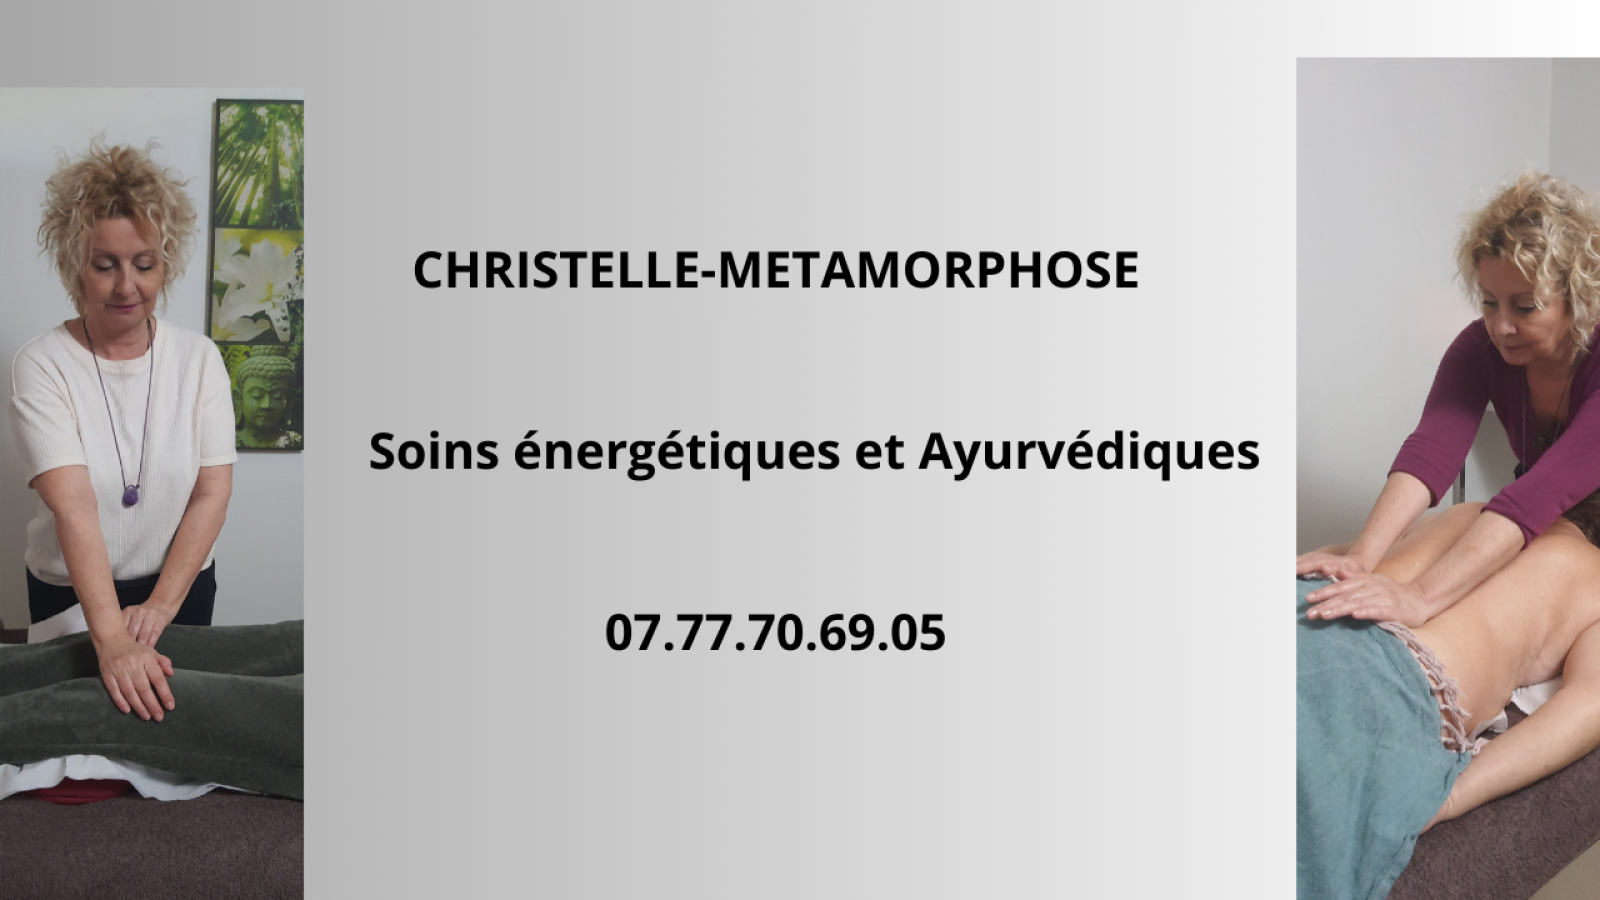 Christelle-Métamorphose